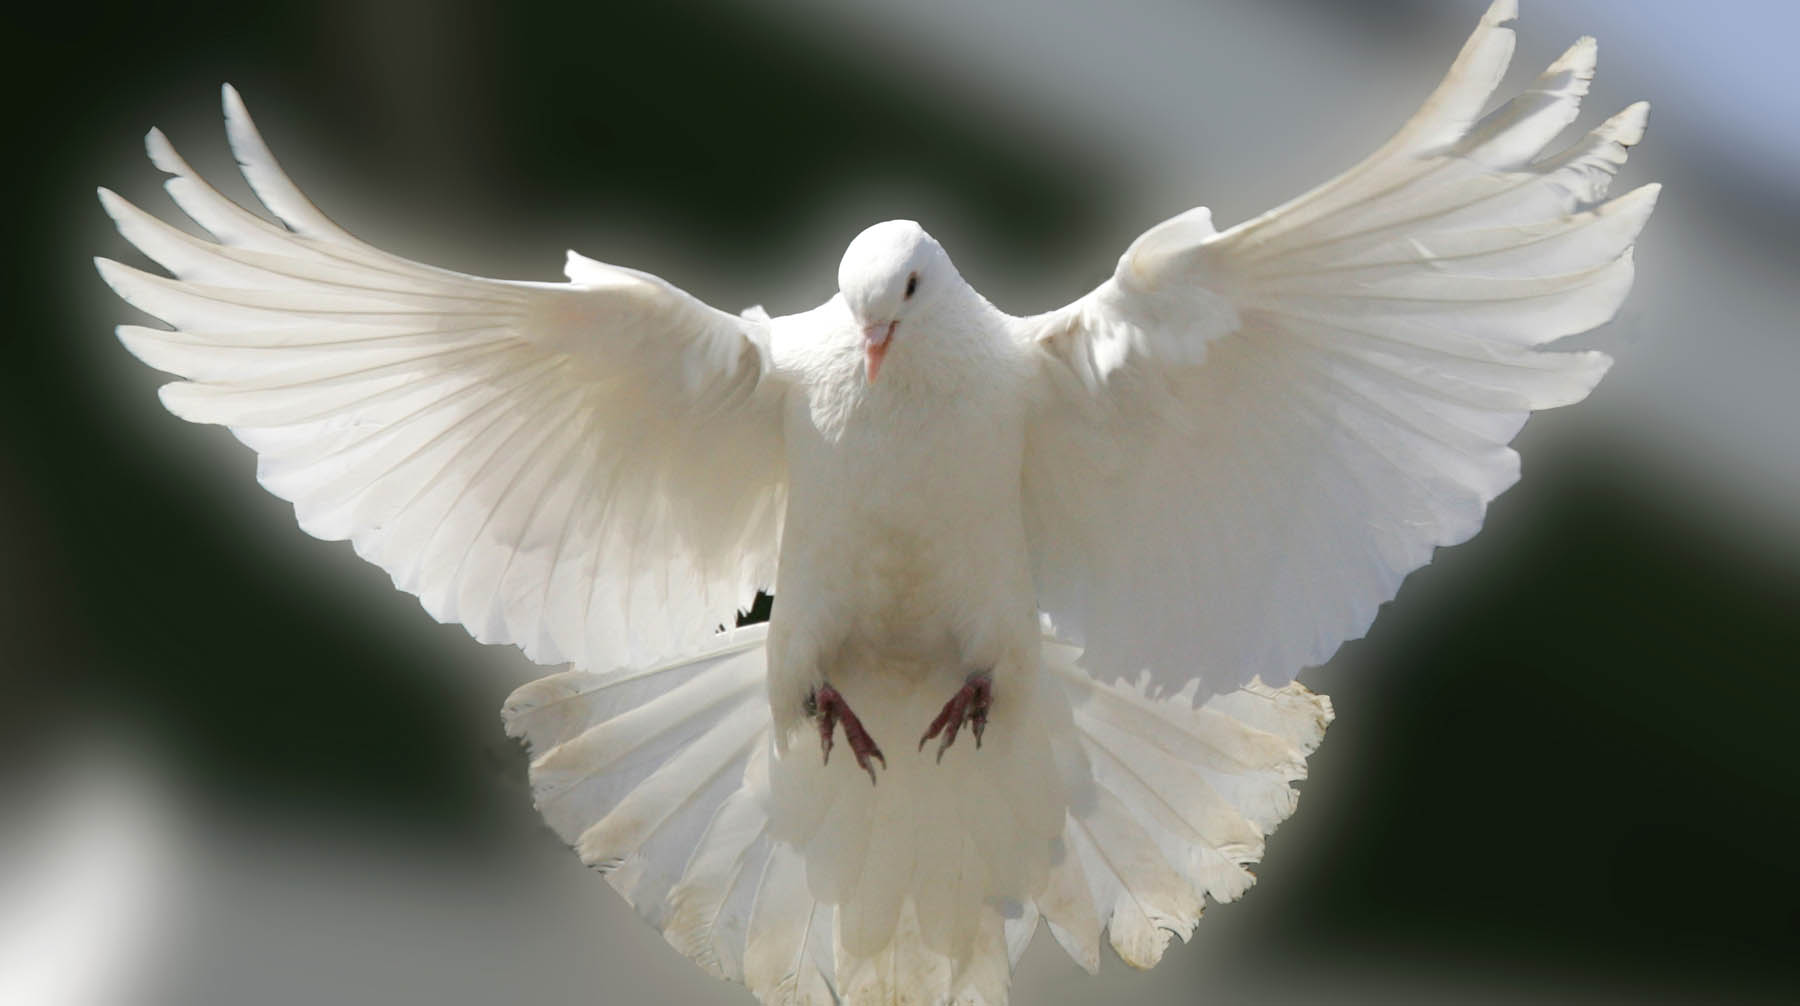 Птица не представляет риска для биосферы, отметили в правительстве Фото: © Global Look Press / Роман Денисов